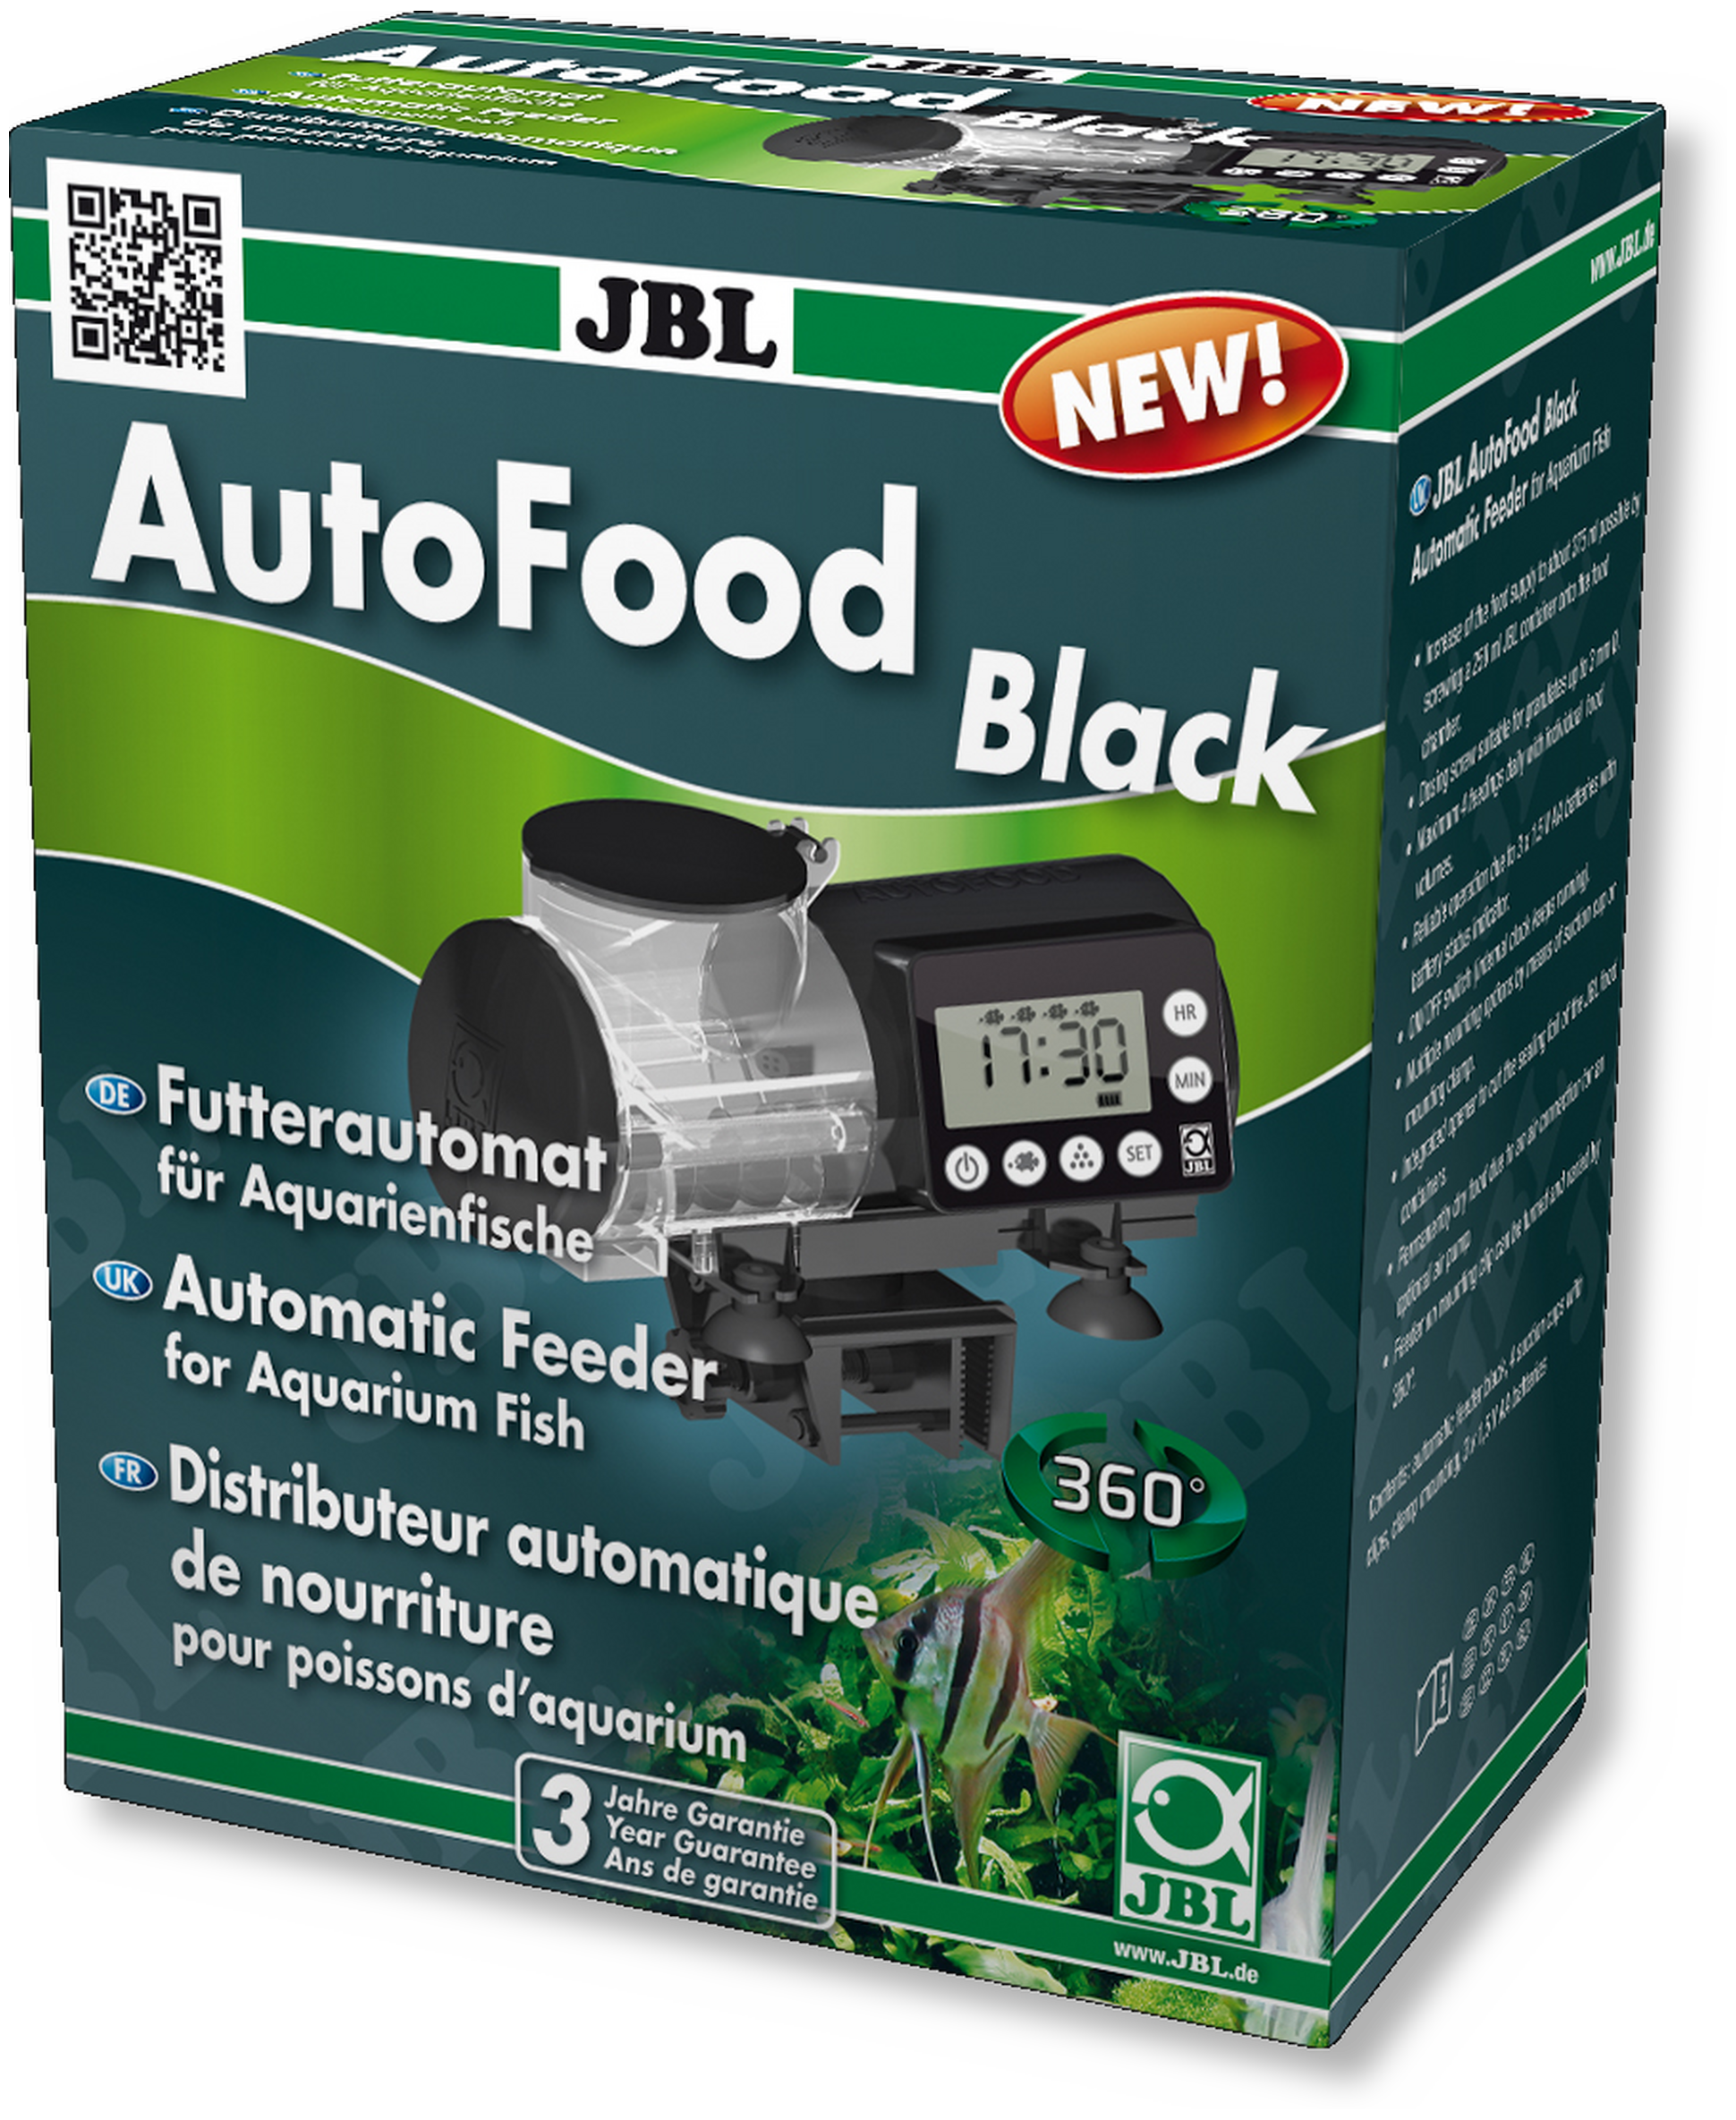 JBL AutoFood BLACK Schwarzer Futterautomat für Aquarienfische